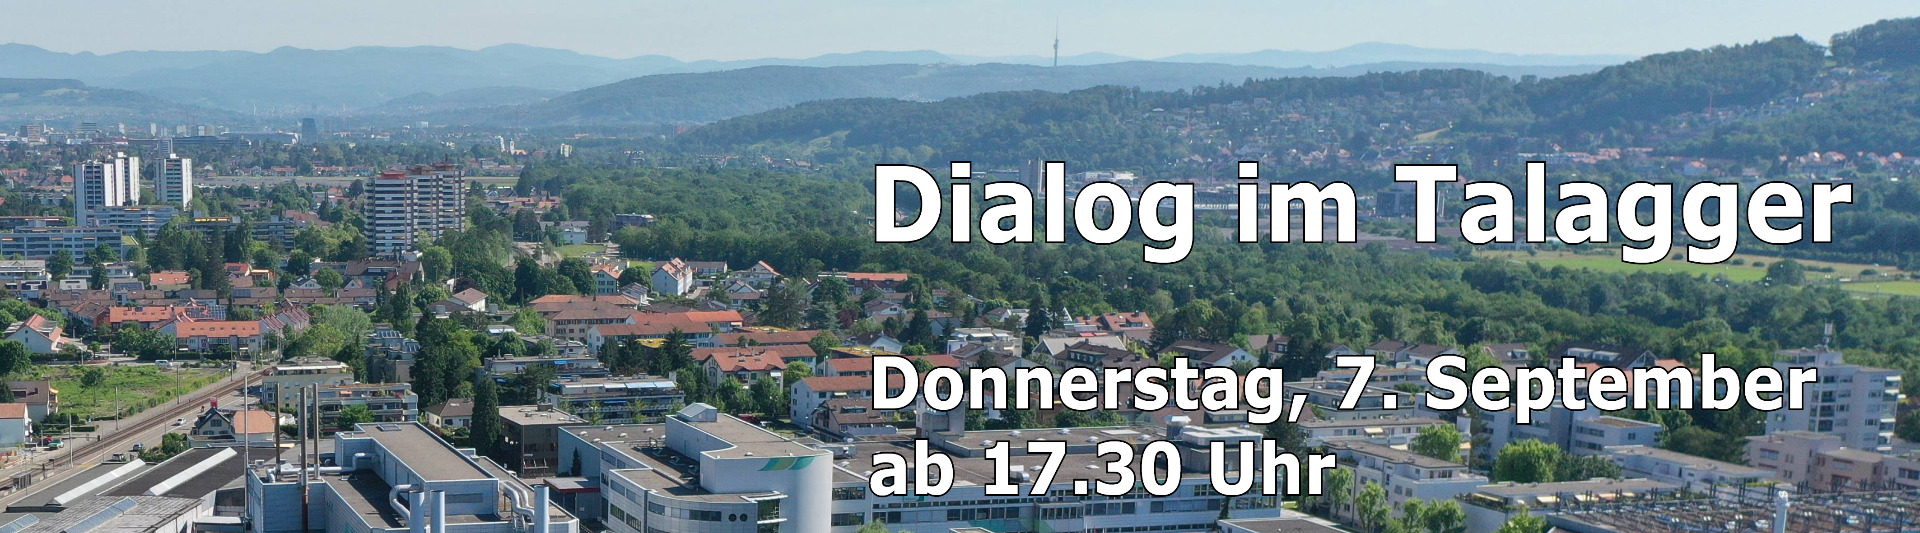 Dialog im Hinterkirch am 29. September